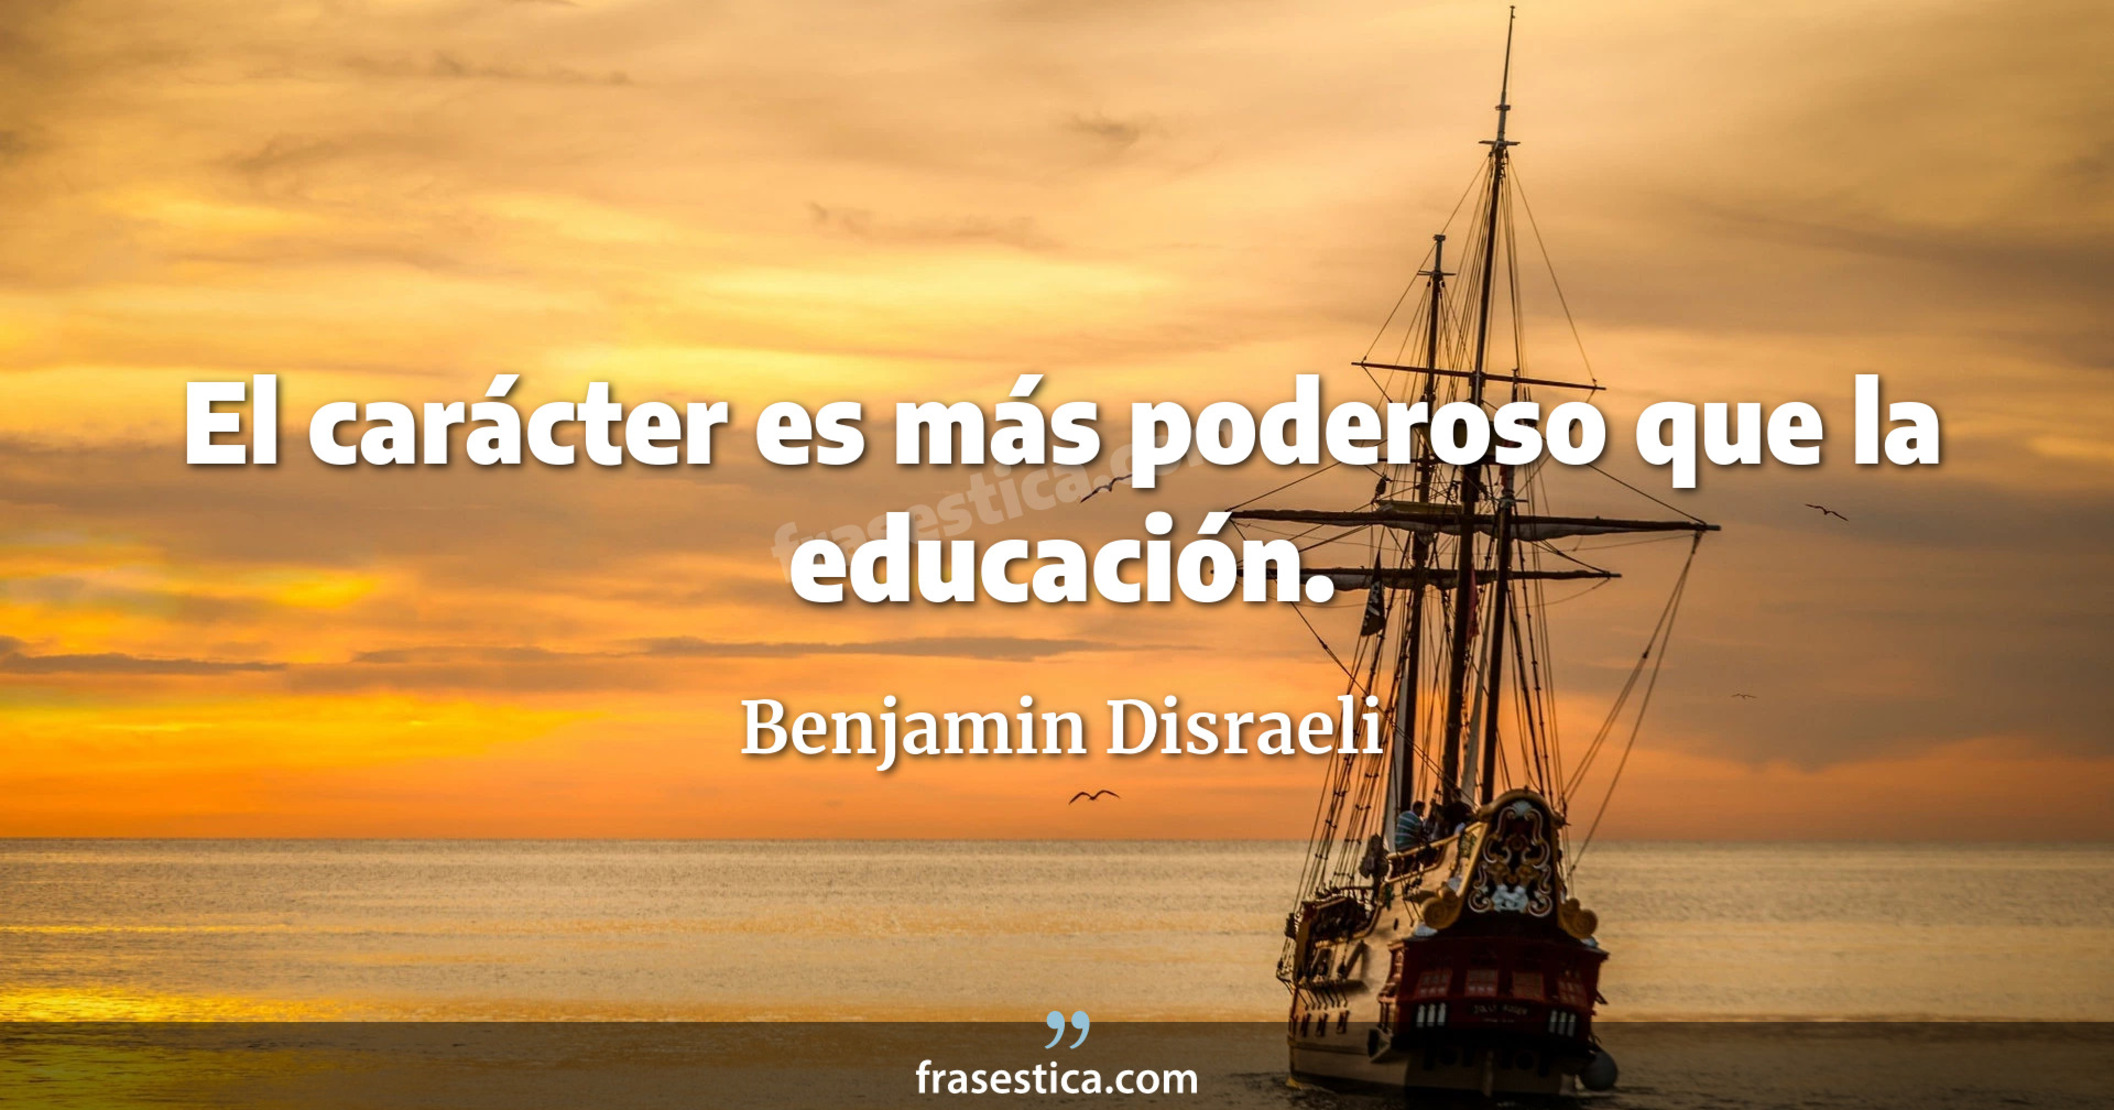 El carácter es más poderoso que la educación. - Benjamin Disraeli